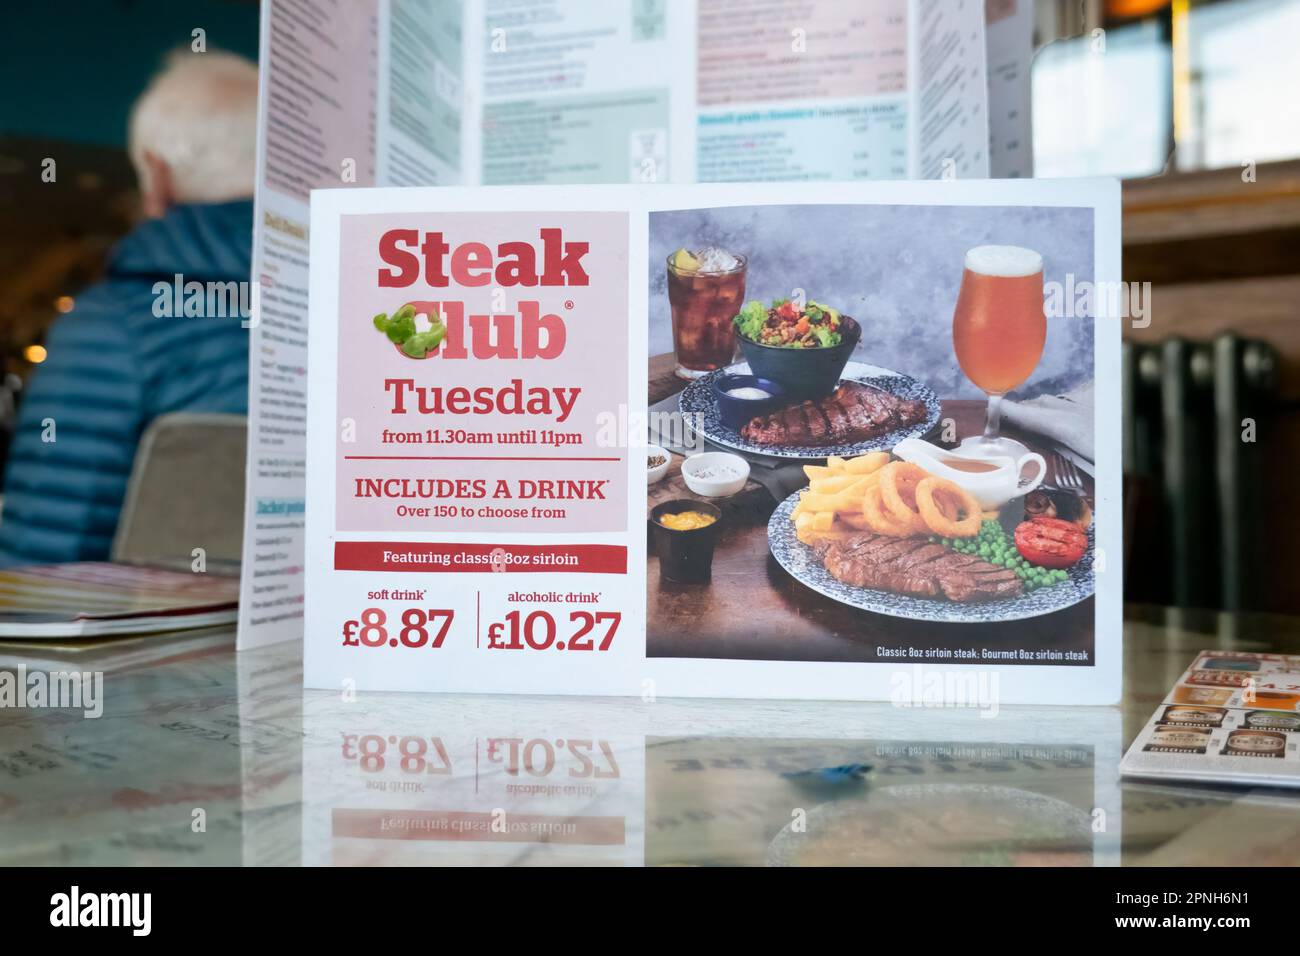 Eine Speisekarte aus einem JD Wetherspoons Pub. Die Karte zeigt die Preise des beliebten Steak Clubs, der jeden Dienstag im Pub verfügbar ist Stockfoto